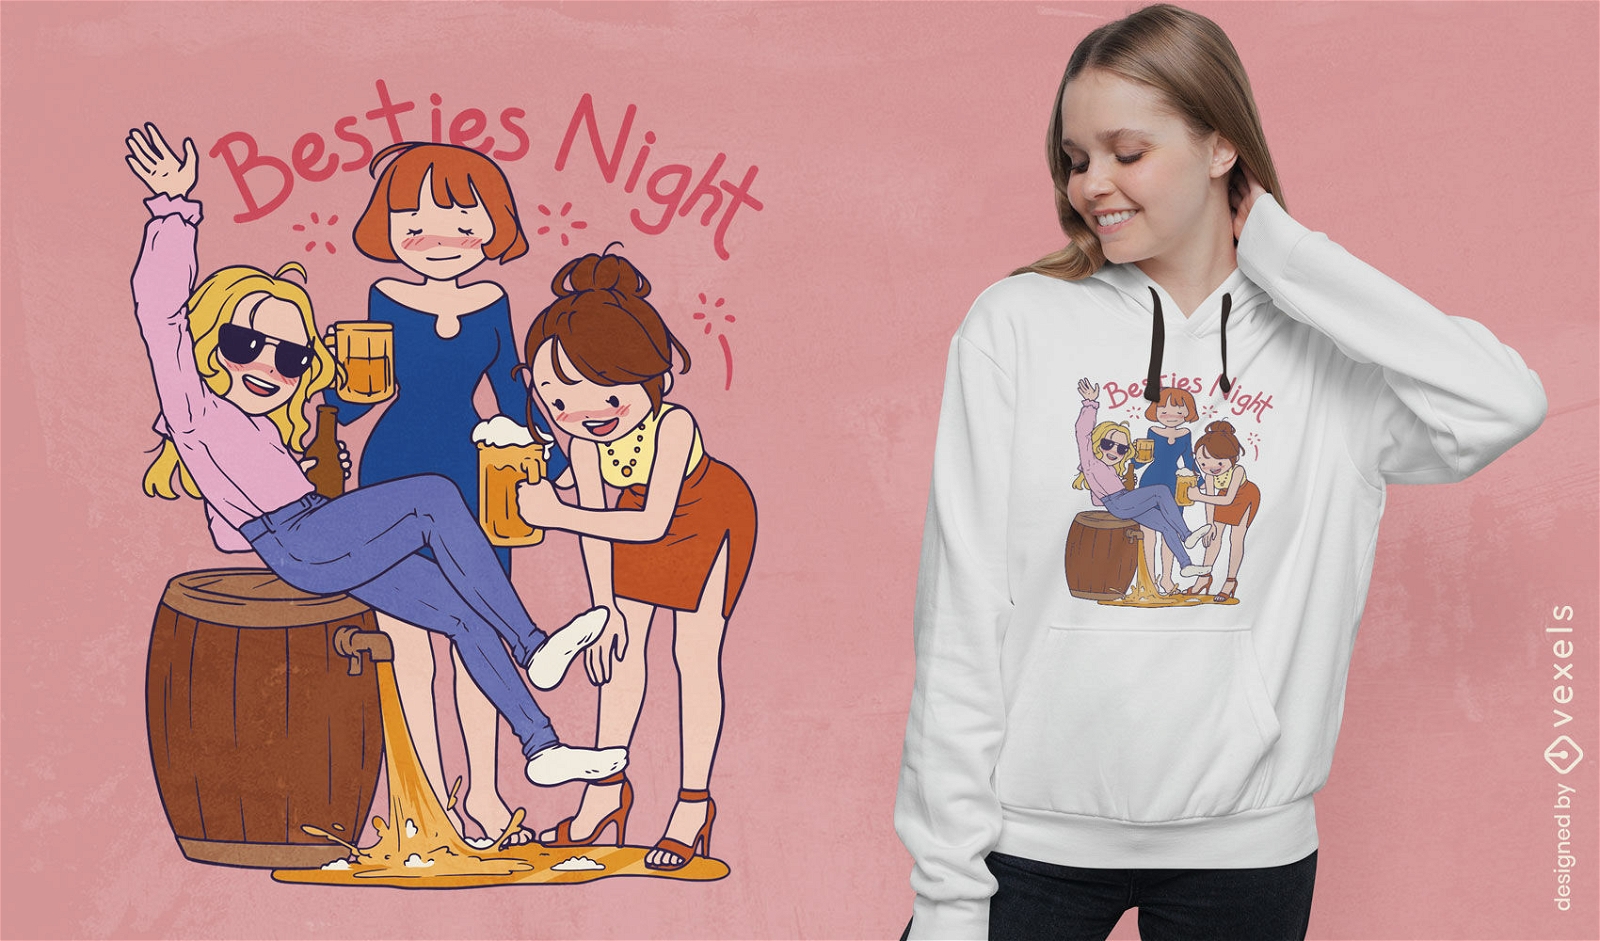 Girlfriends night t-shirt design